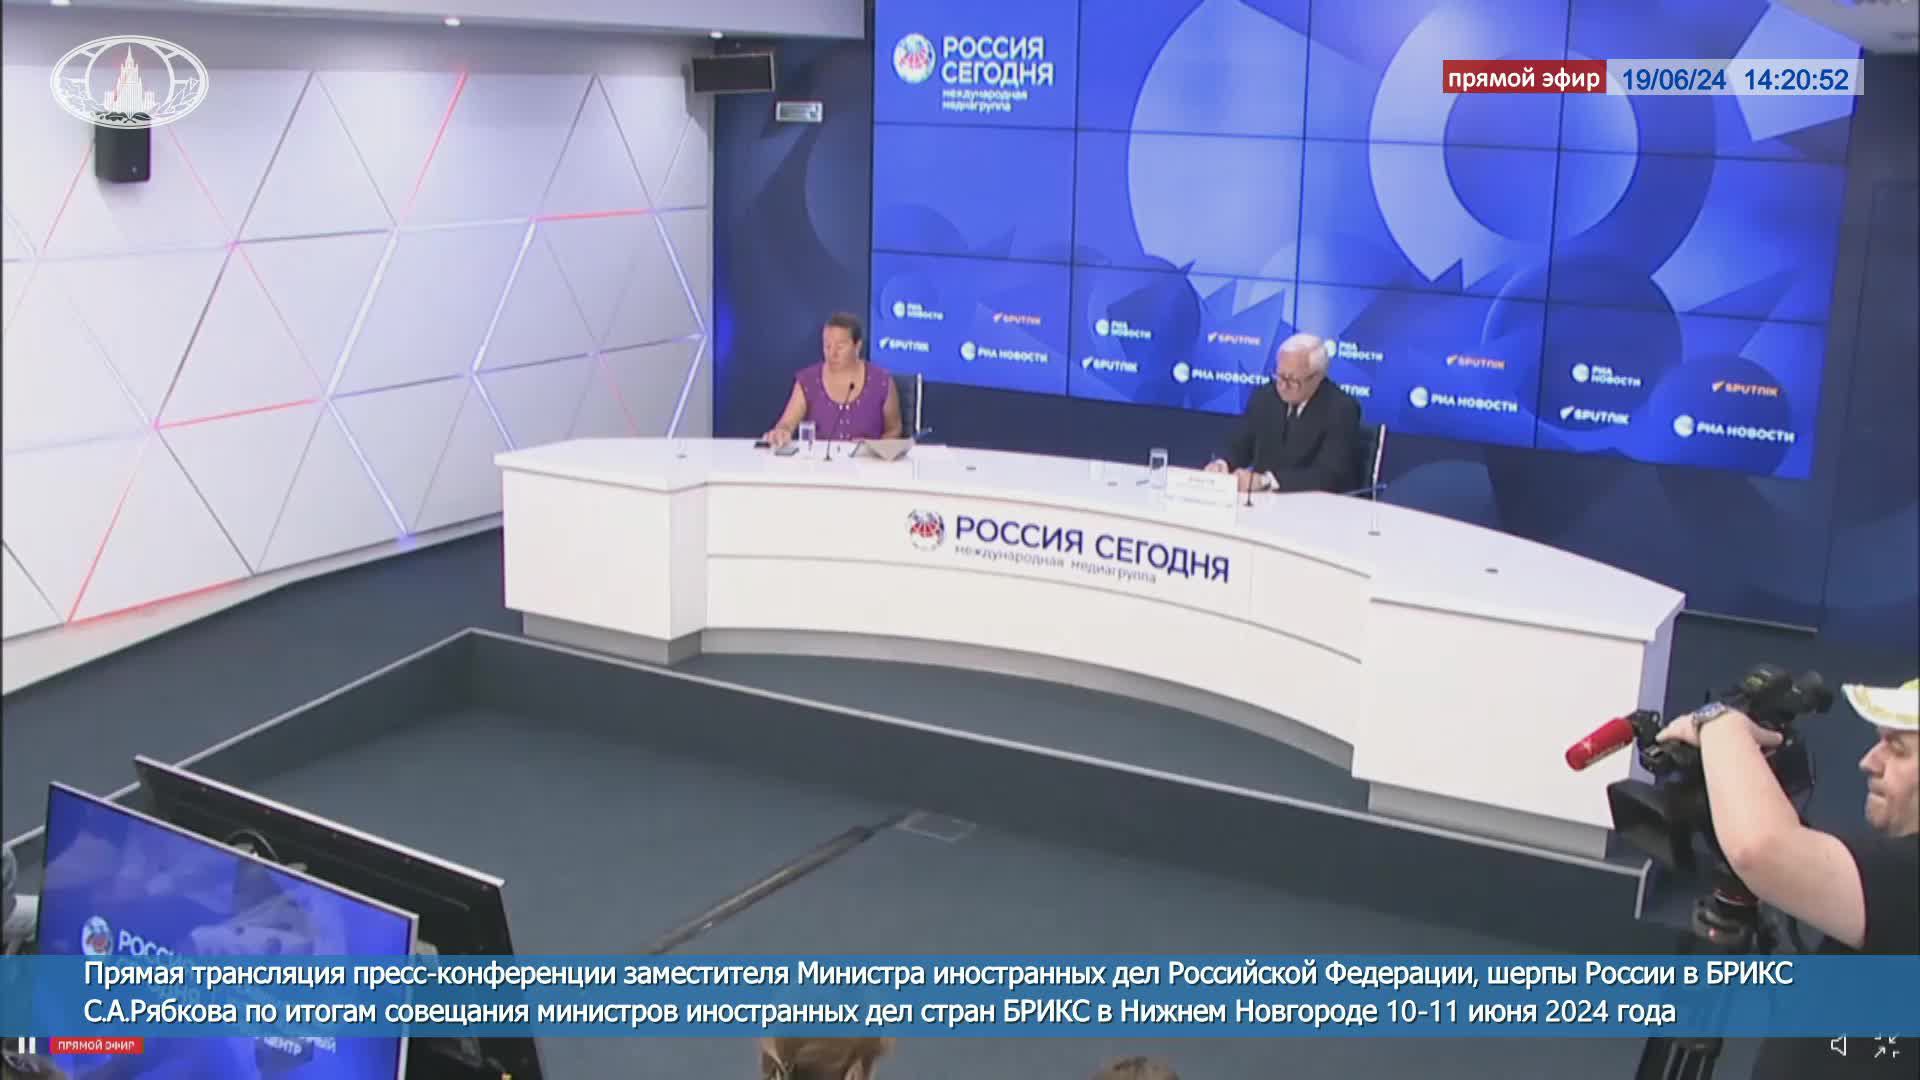 🔴 #ПрямойЭфир: Пресс-конференция С.А.Рябкова по итогам совещания мининдел БРИКС в Нижнем Новгороде